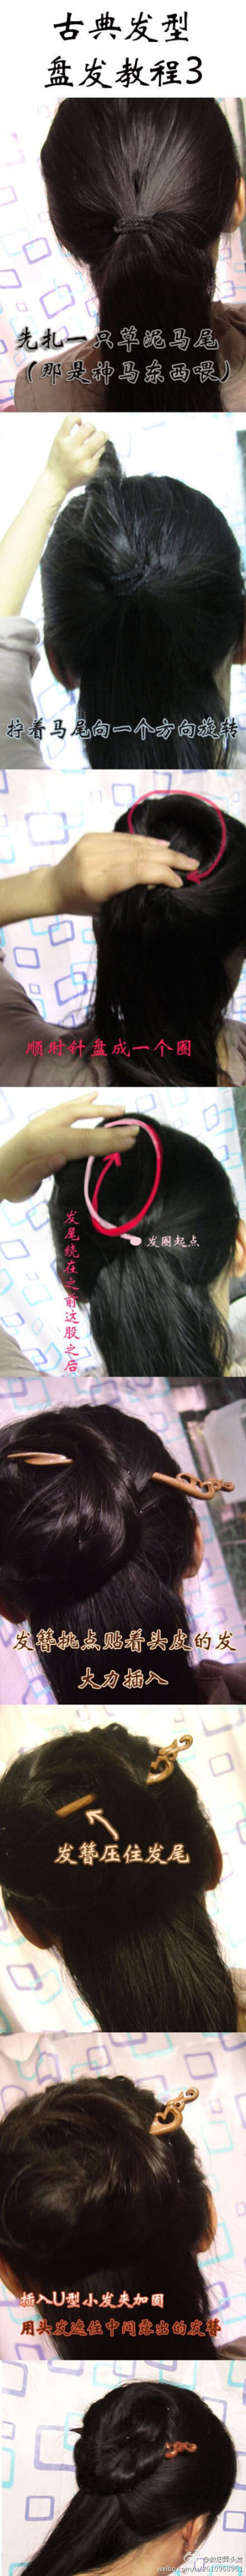 古典发型的盘发教程，这个是一根簪子就能搞定的发型~ 喜欢请关注@教您弄头发